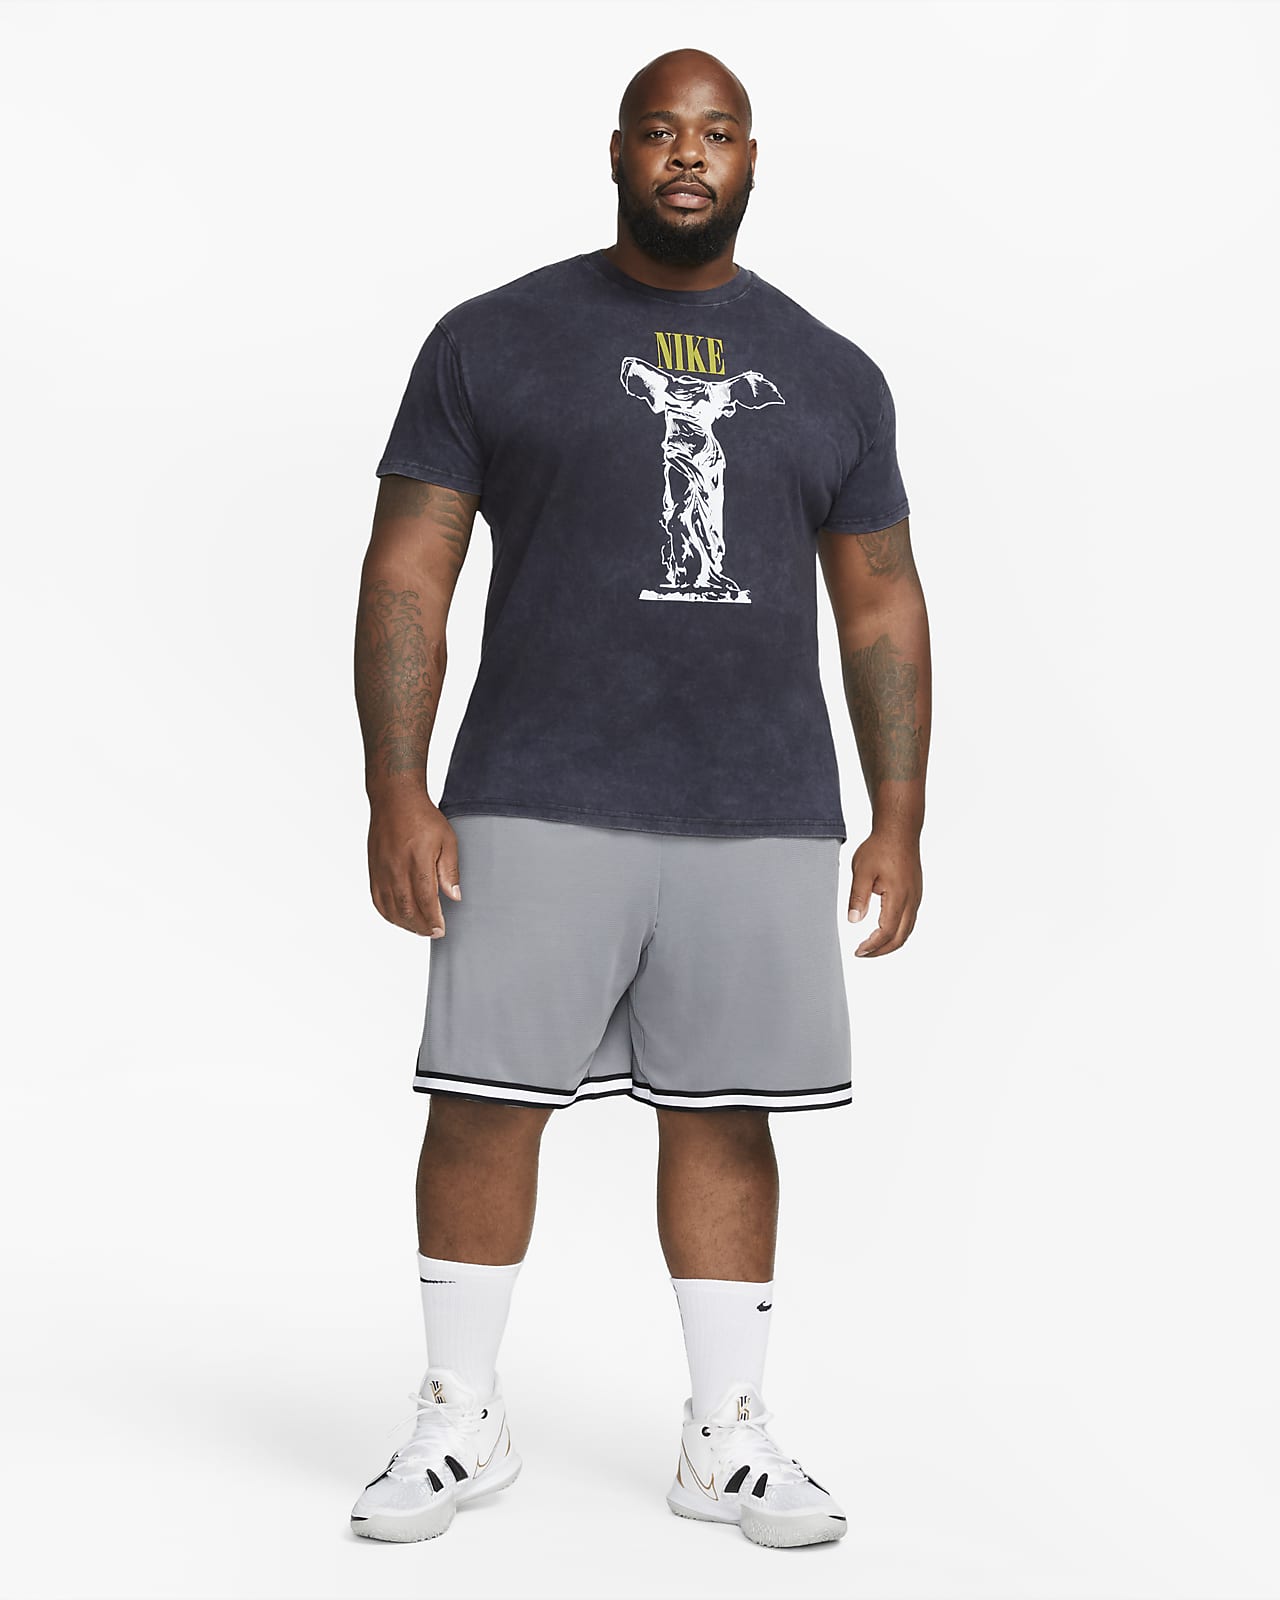 Nike Men's Basketball T-Shirt. Nike CH